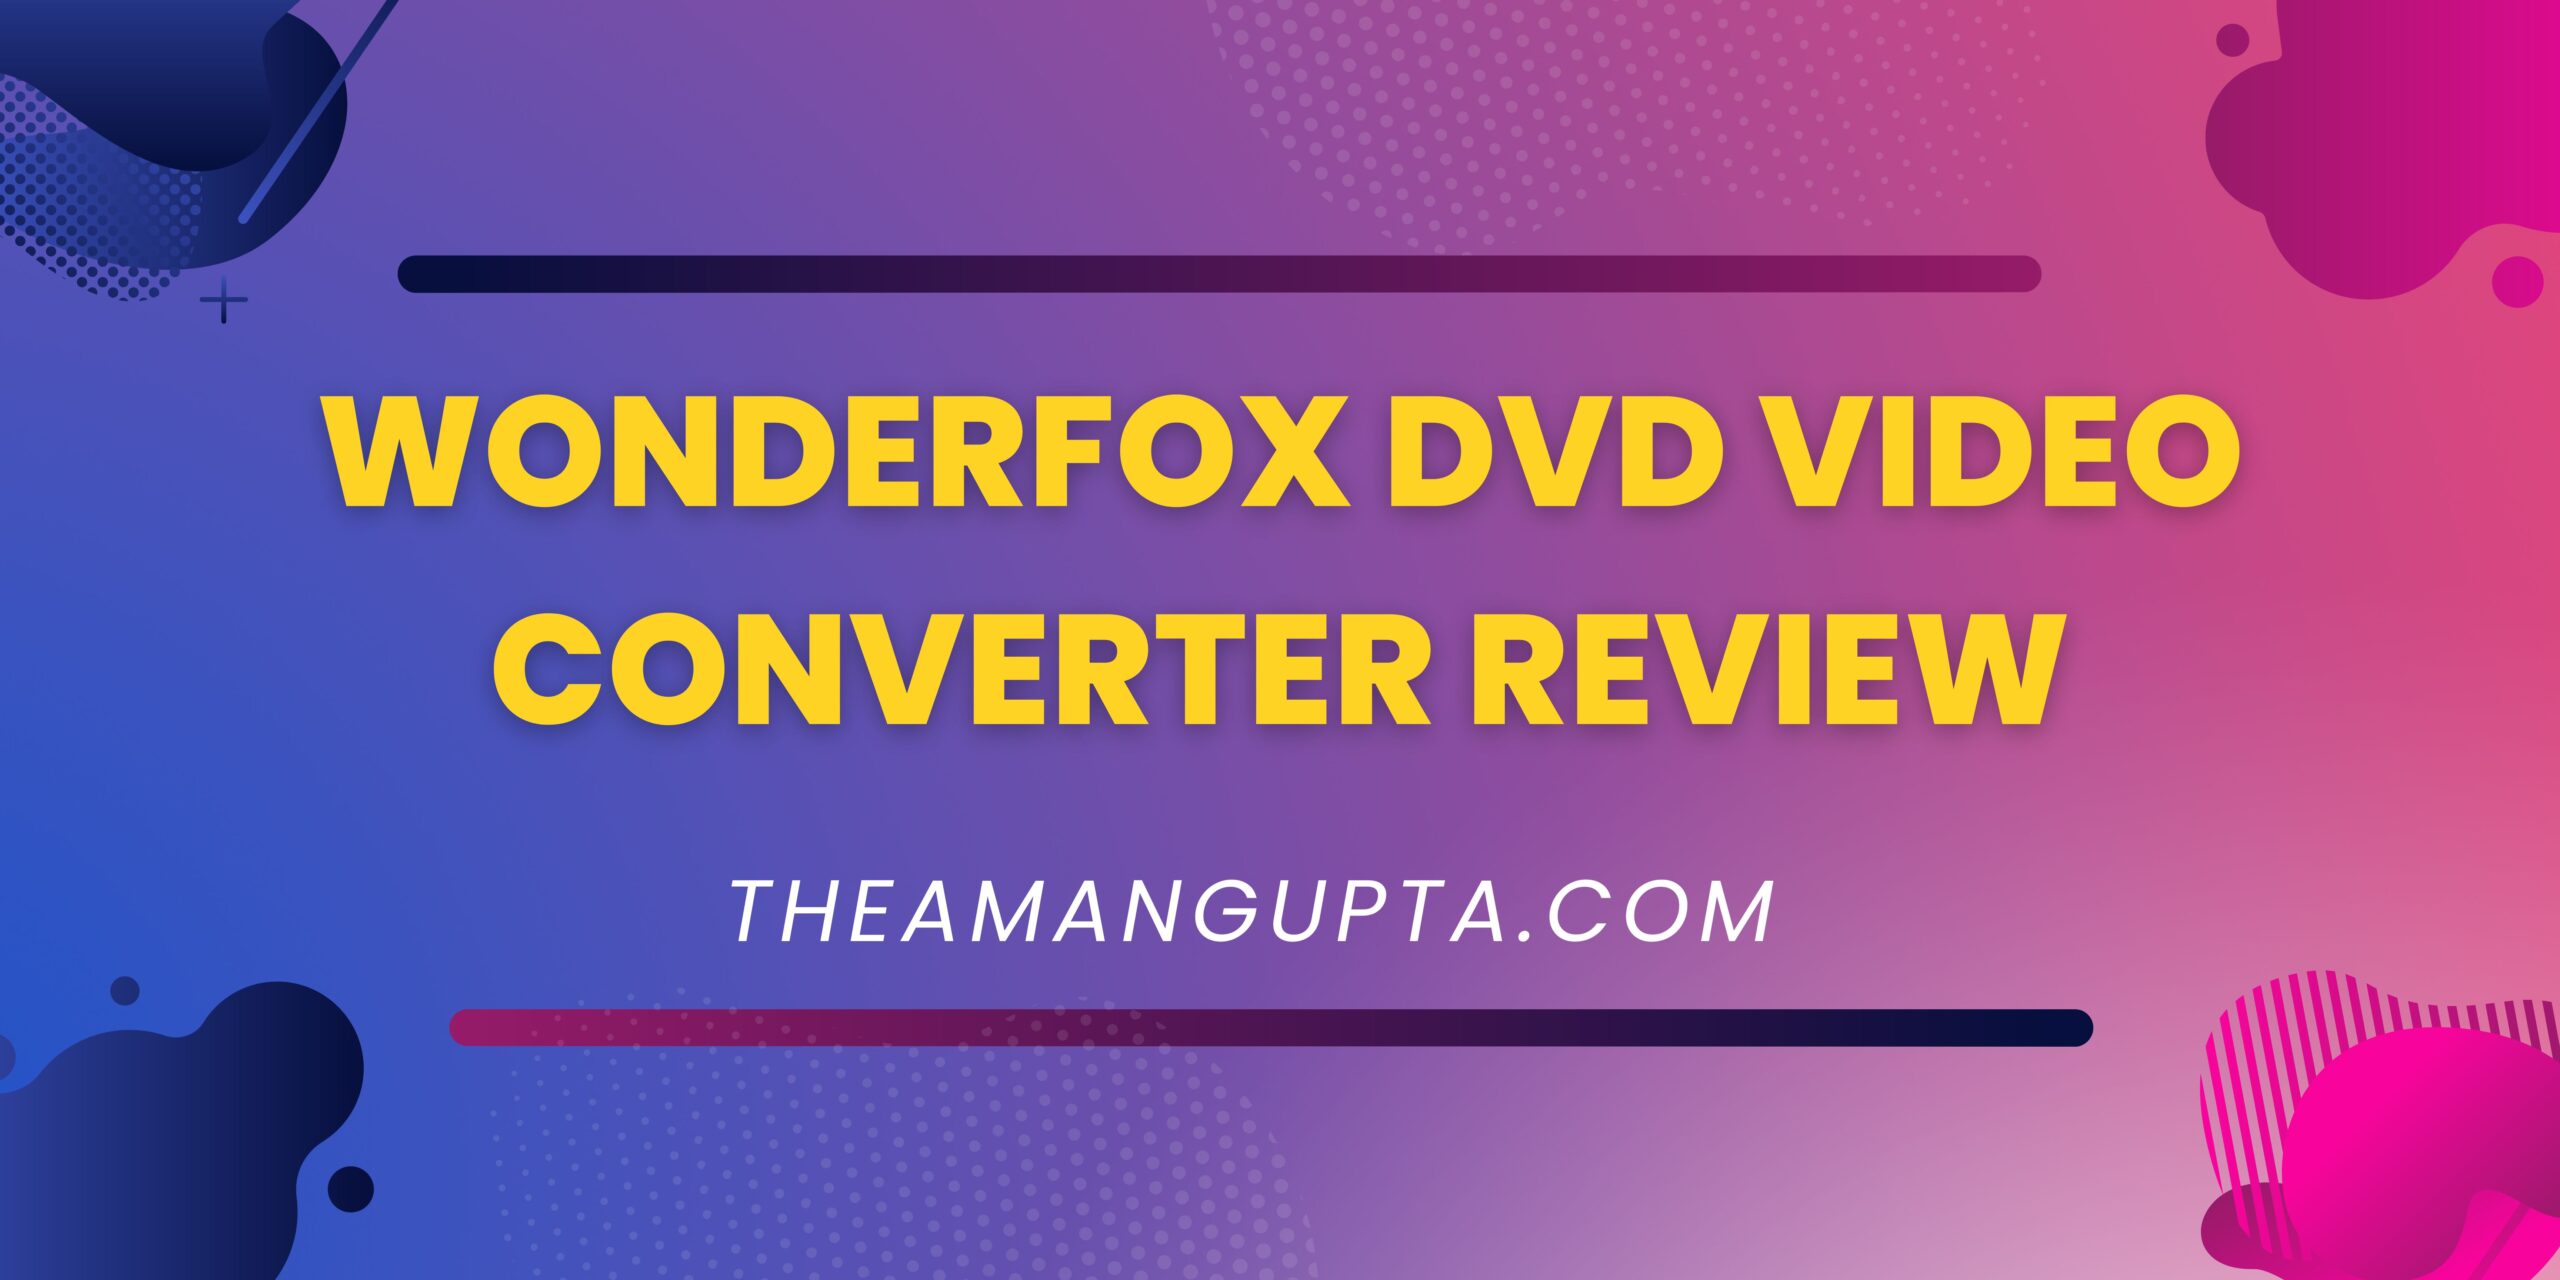 WonderFox DVD Video Converter Review|Review|Theamangupta|Theamangupta